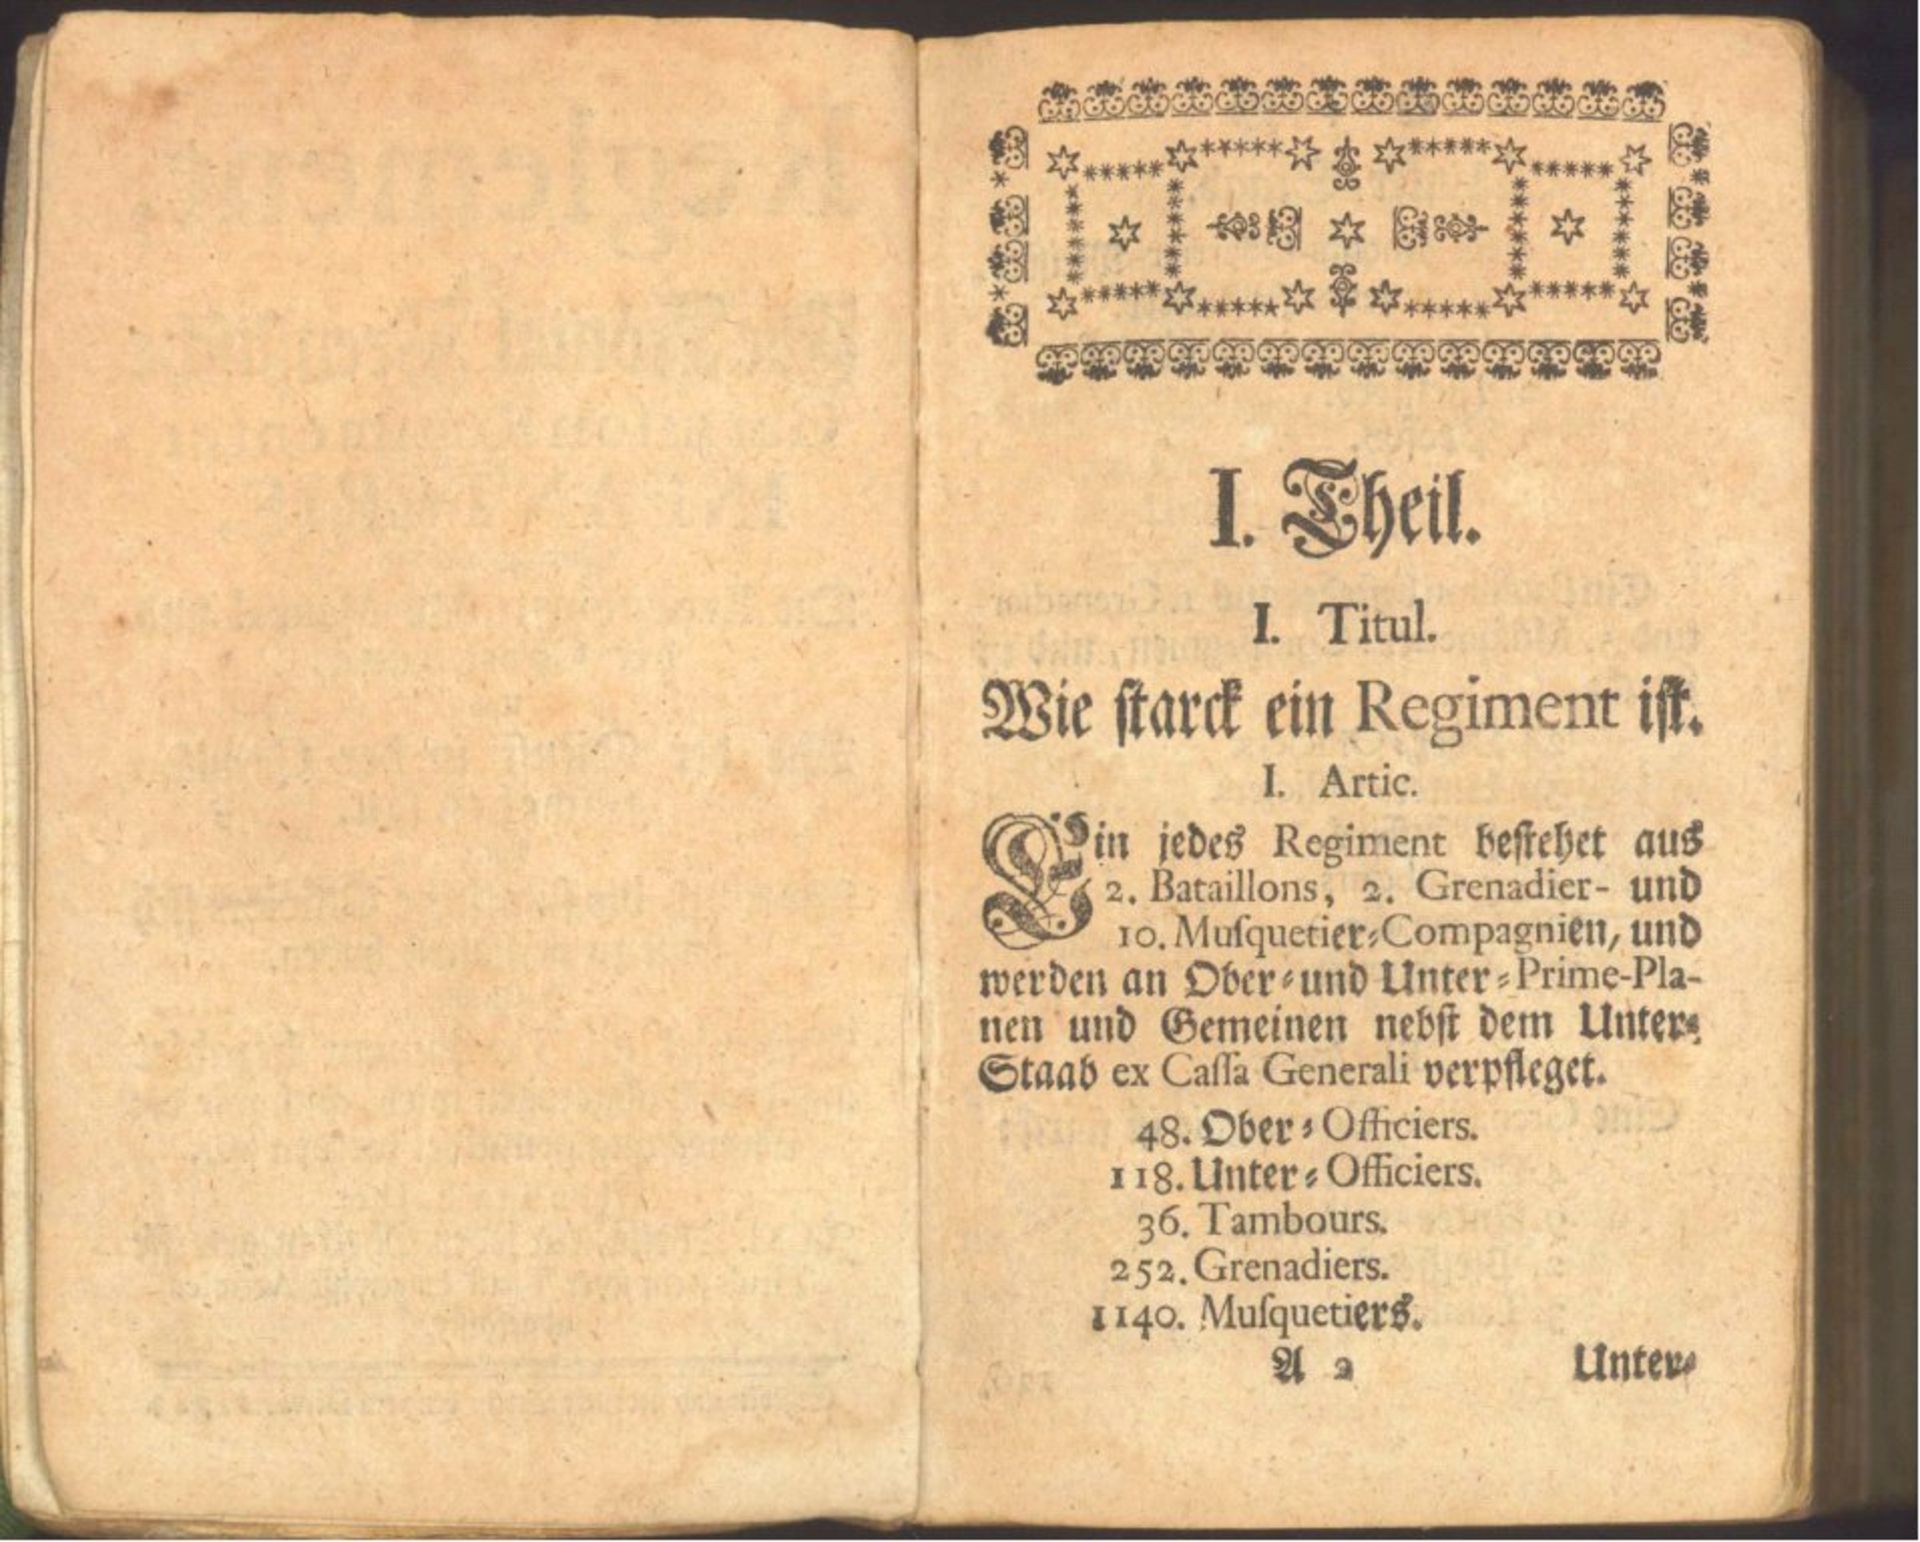 Reglement vor die Königl. Preussische Infanterie von 1743worin enthalten: die Evolutions, das Manual - Image 3 of 8